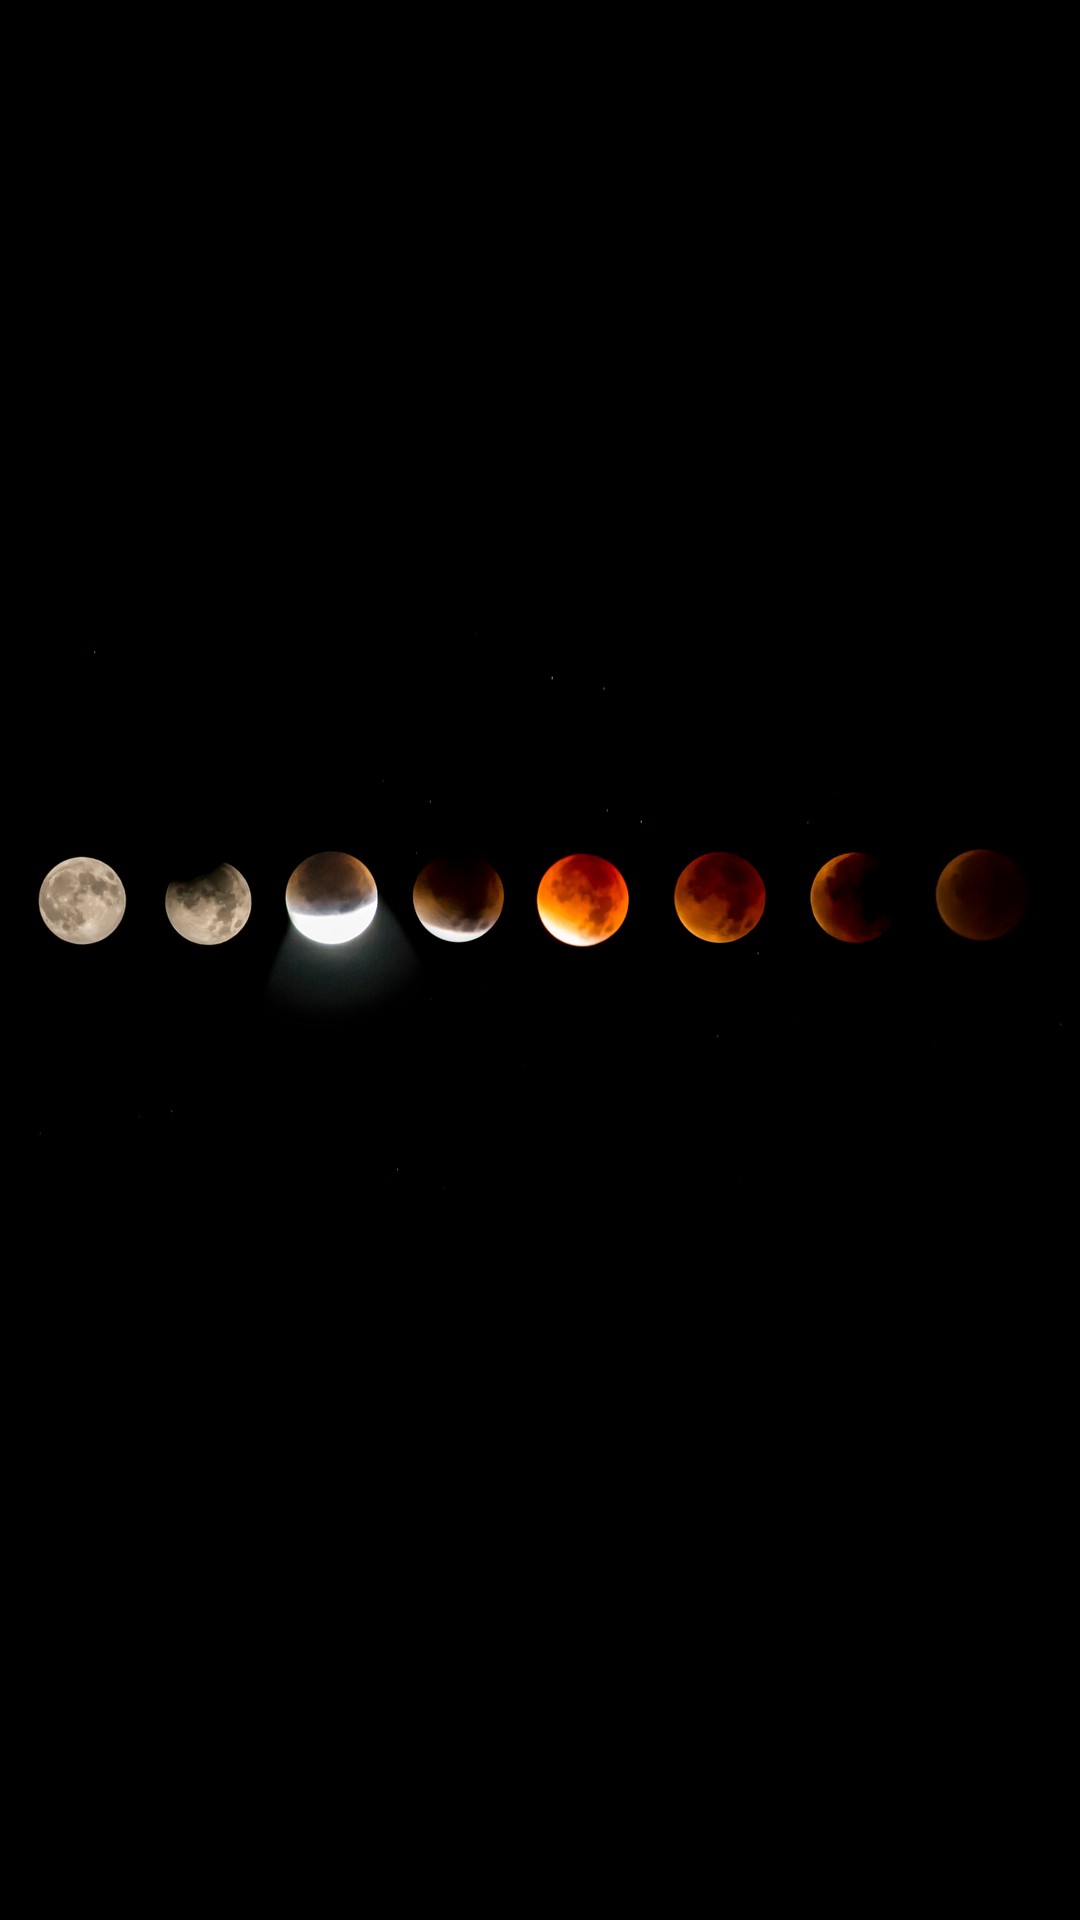 Blood Moon Lunar Eclipse iPhone Wallpaper resolution 1080x1920